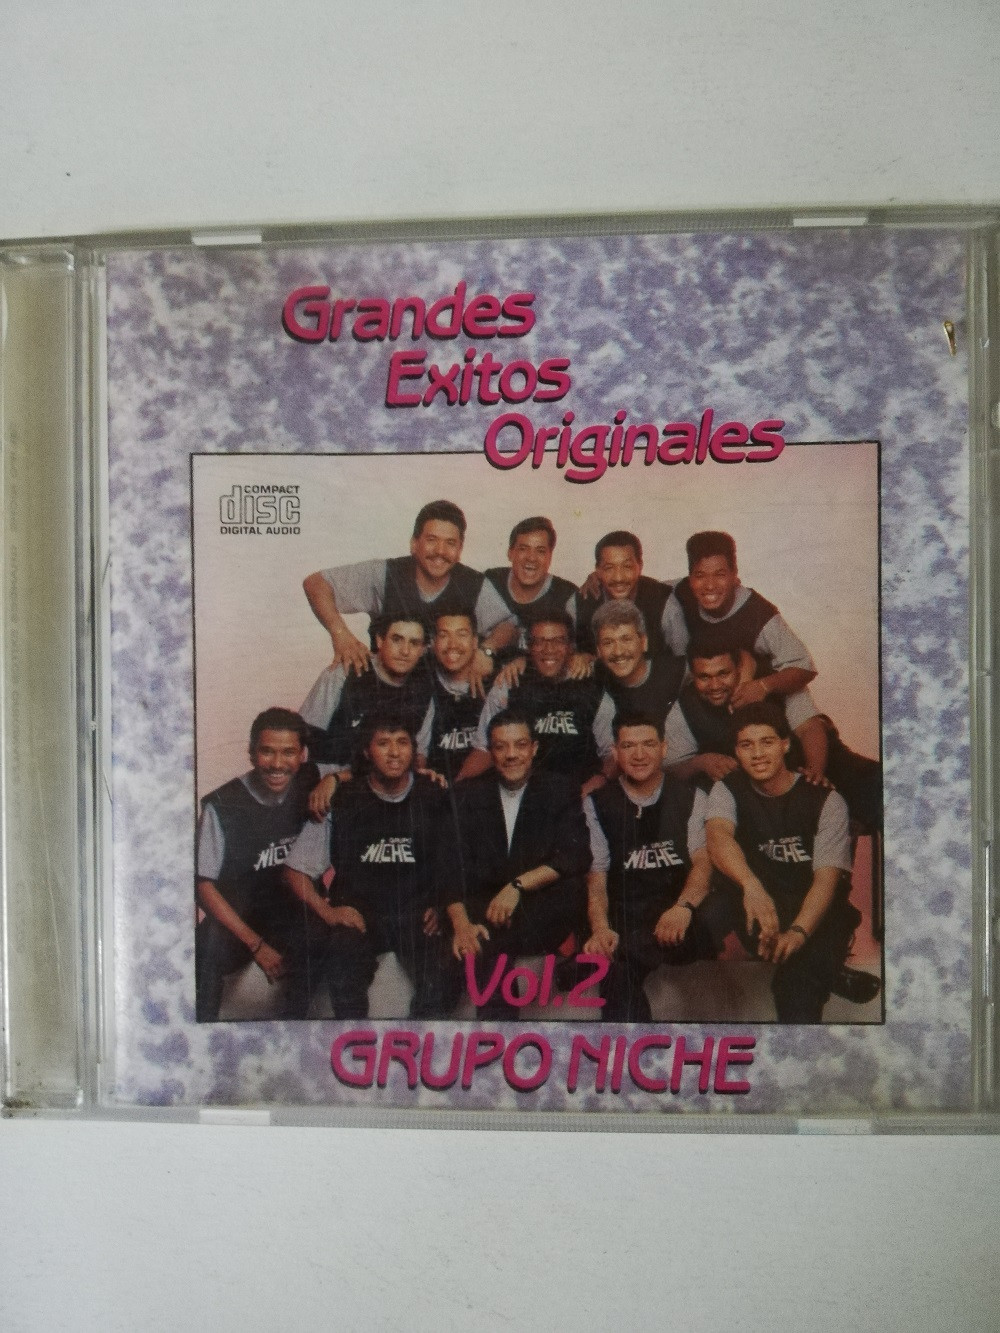 Imagen CD GRUPO NICHE - GRANDES EXITOS ORIGINALES VOL. 2